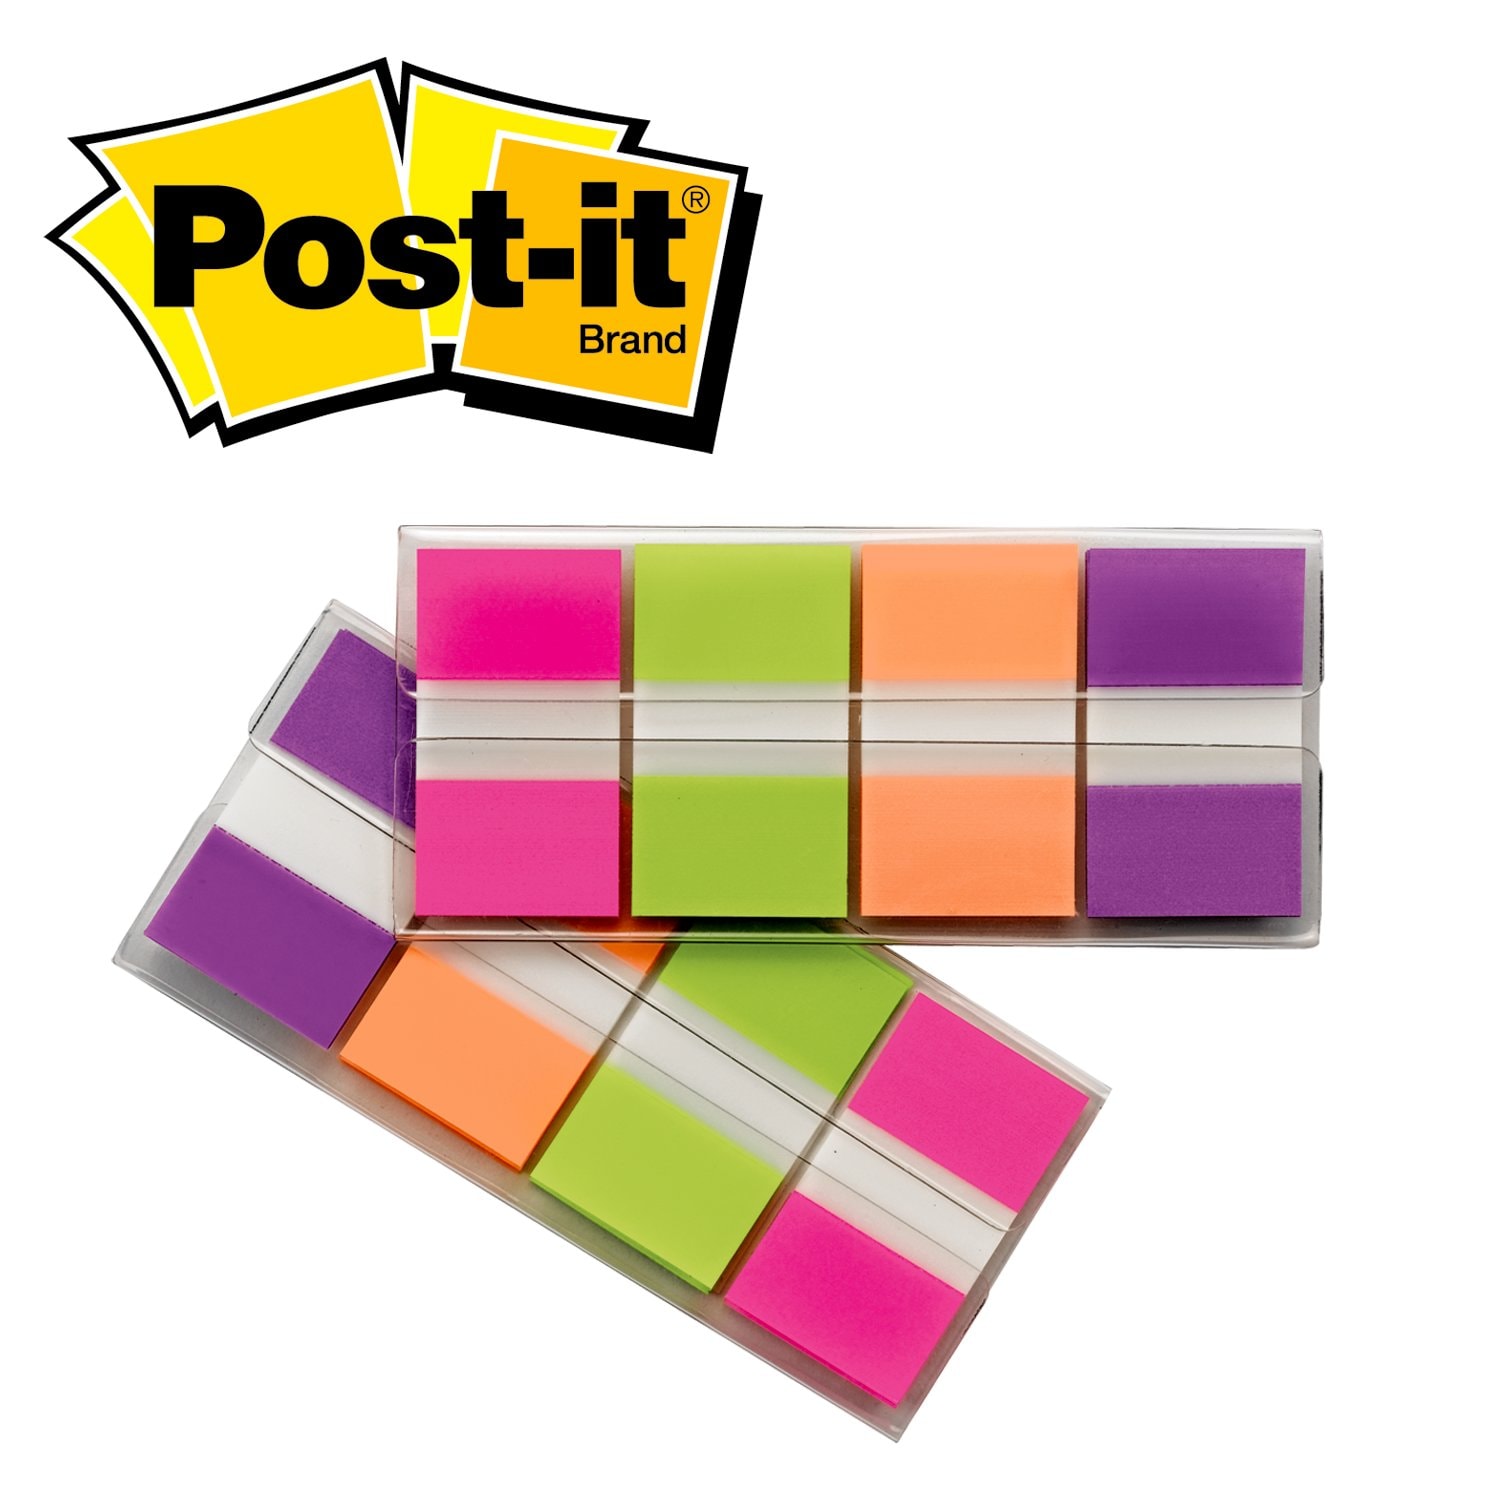 7000127121 - Post-it Flags 680-PGOP2, .94 in. x 1.7 in. (23.8 mm x 43.2 mm) Blue,
Purple, Green, Orange 24 pk/cs